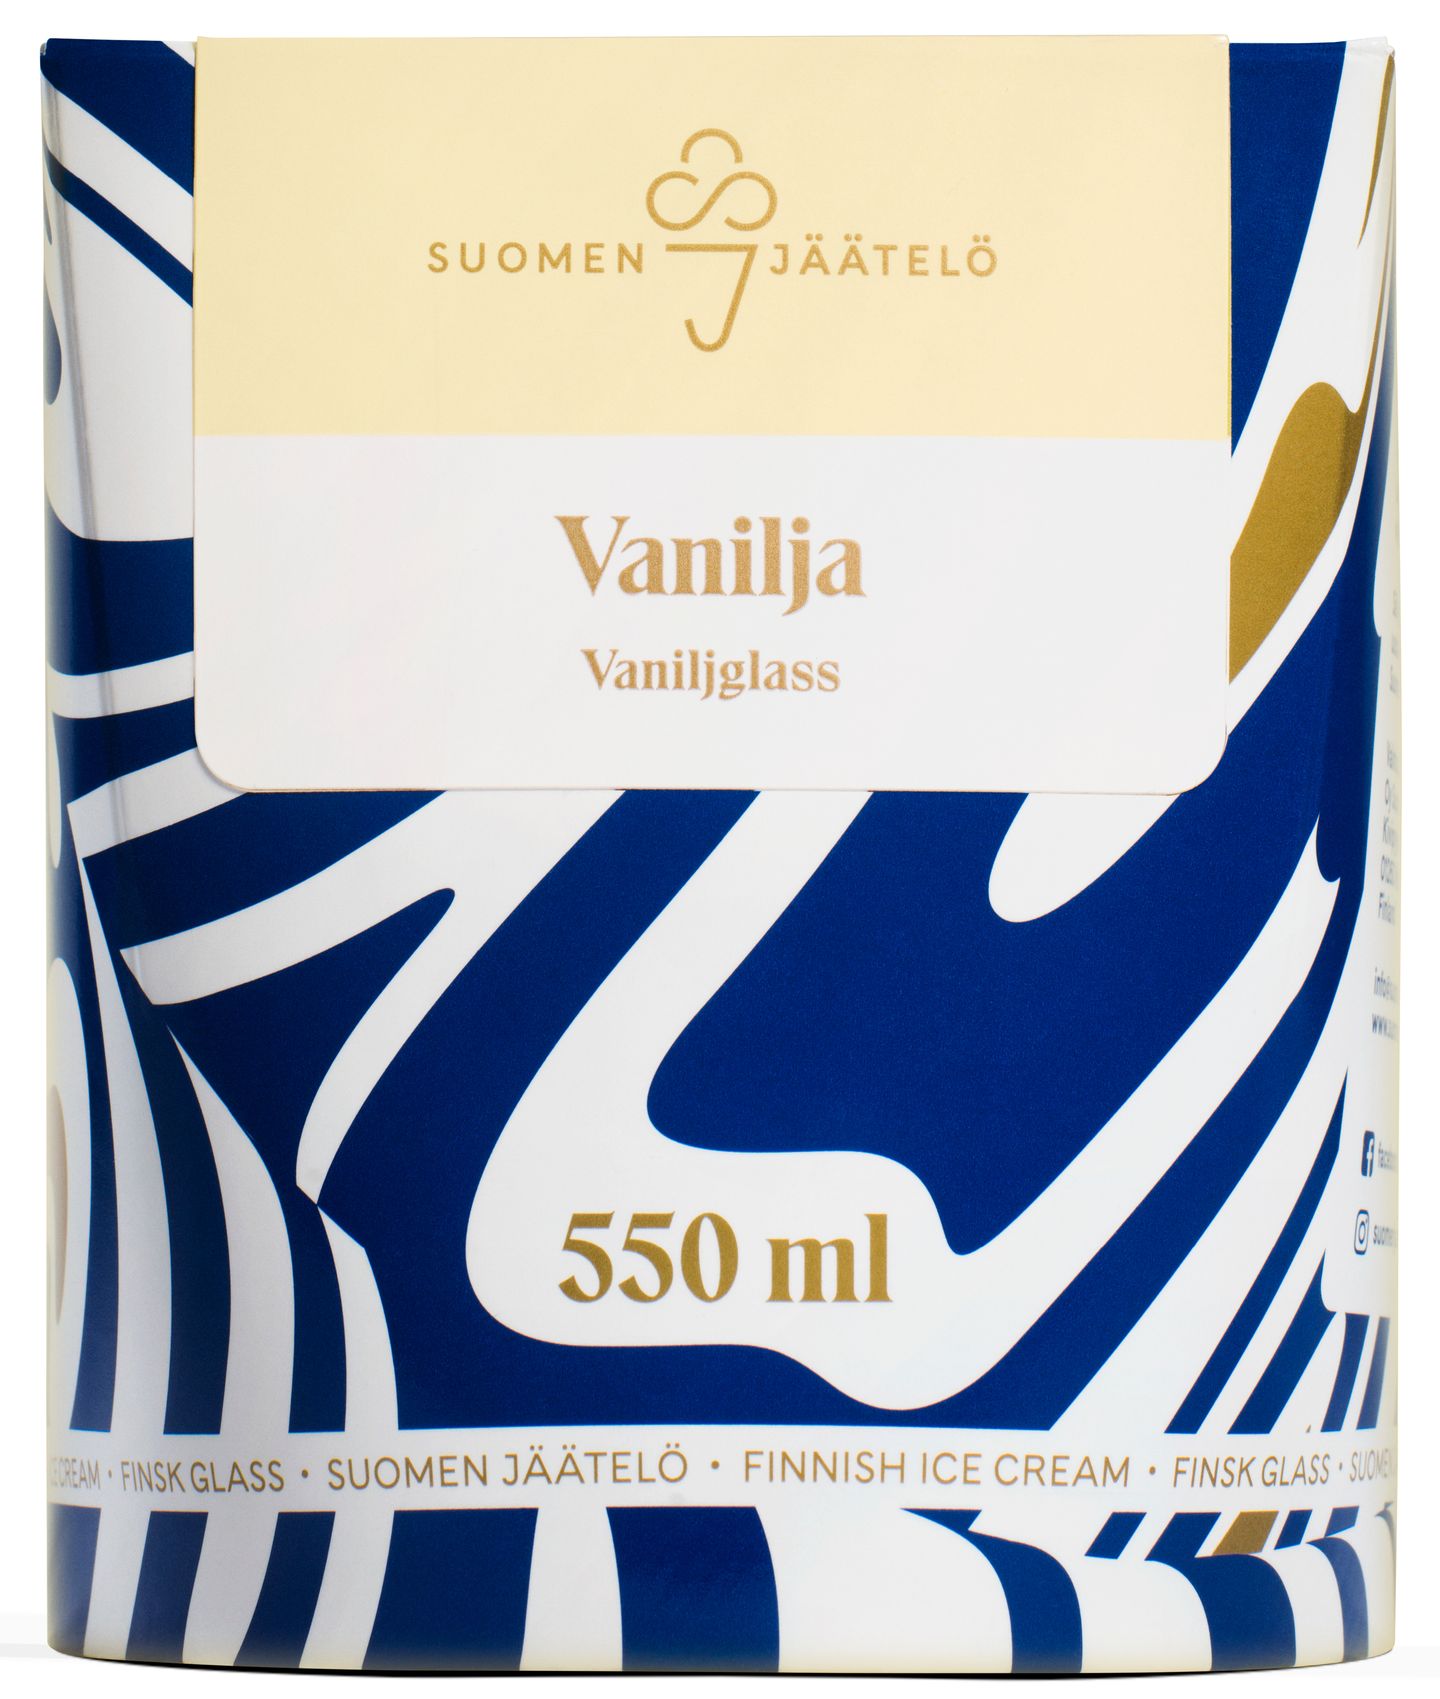 Suomen jäätelö vaniljajäätelö 550 ml — HoReCa-tukku Kespro